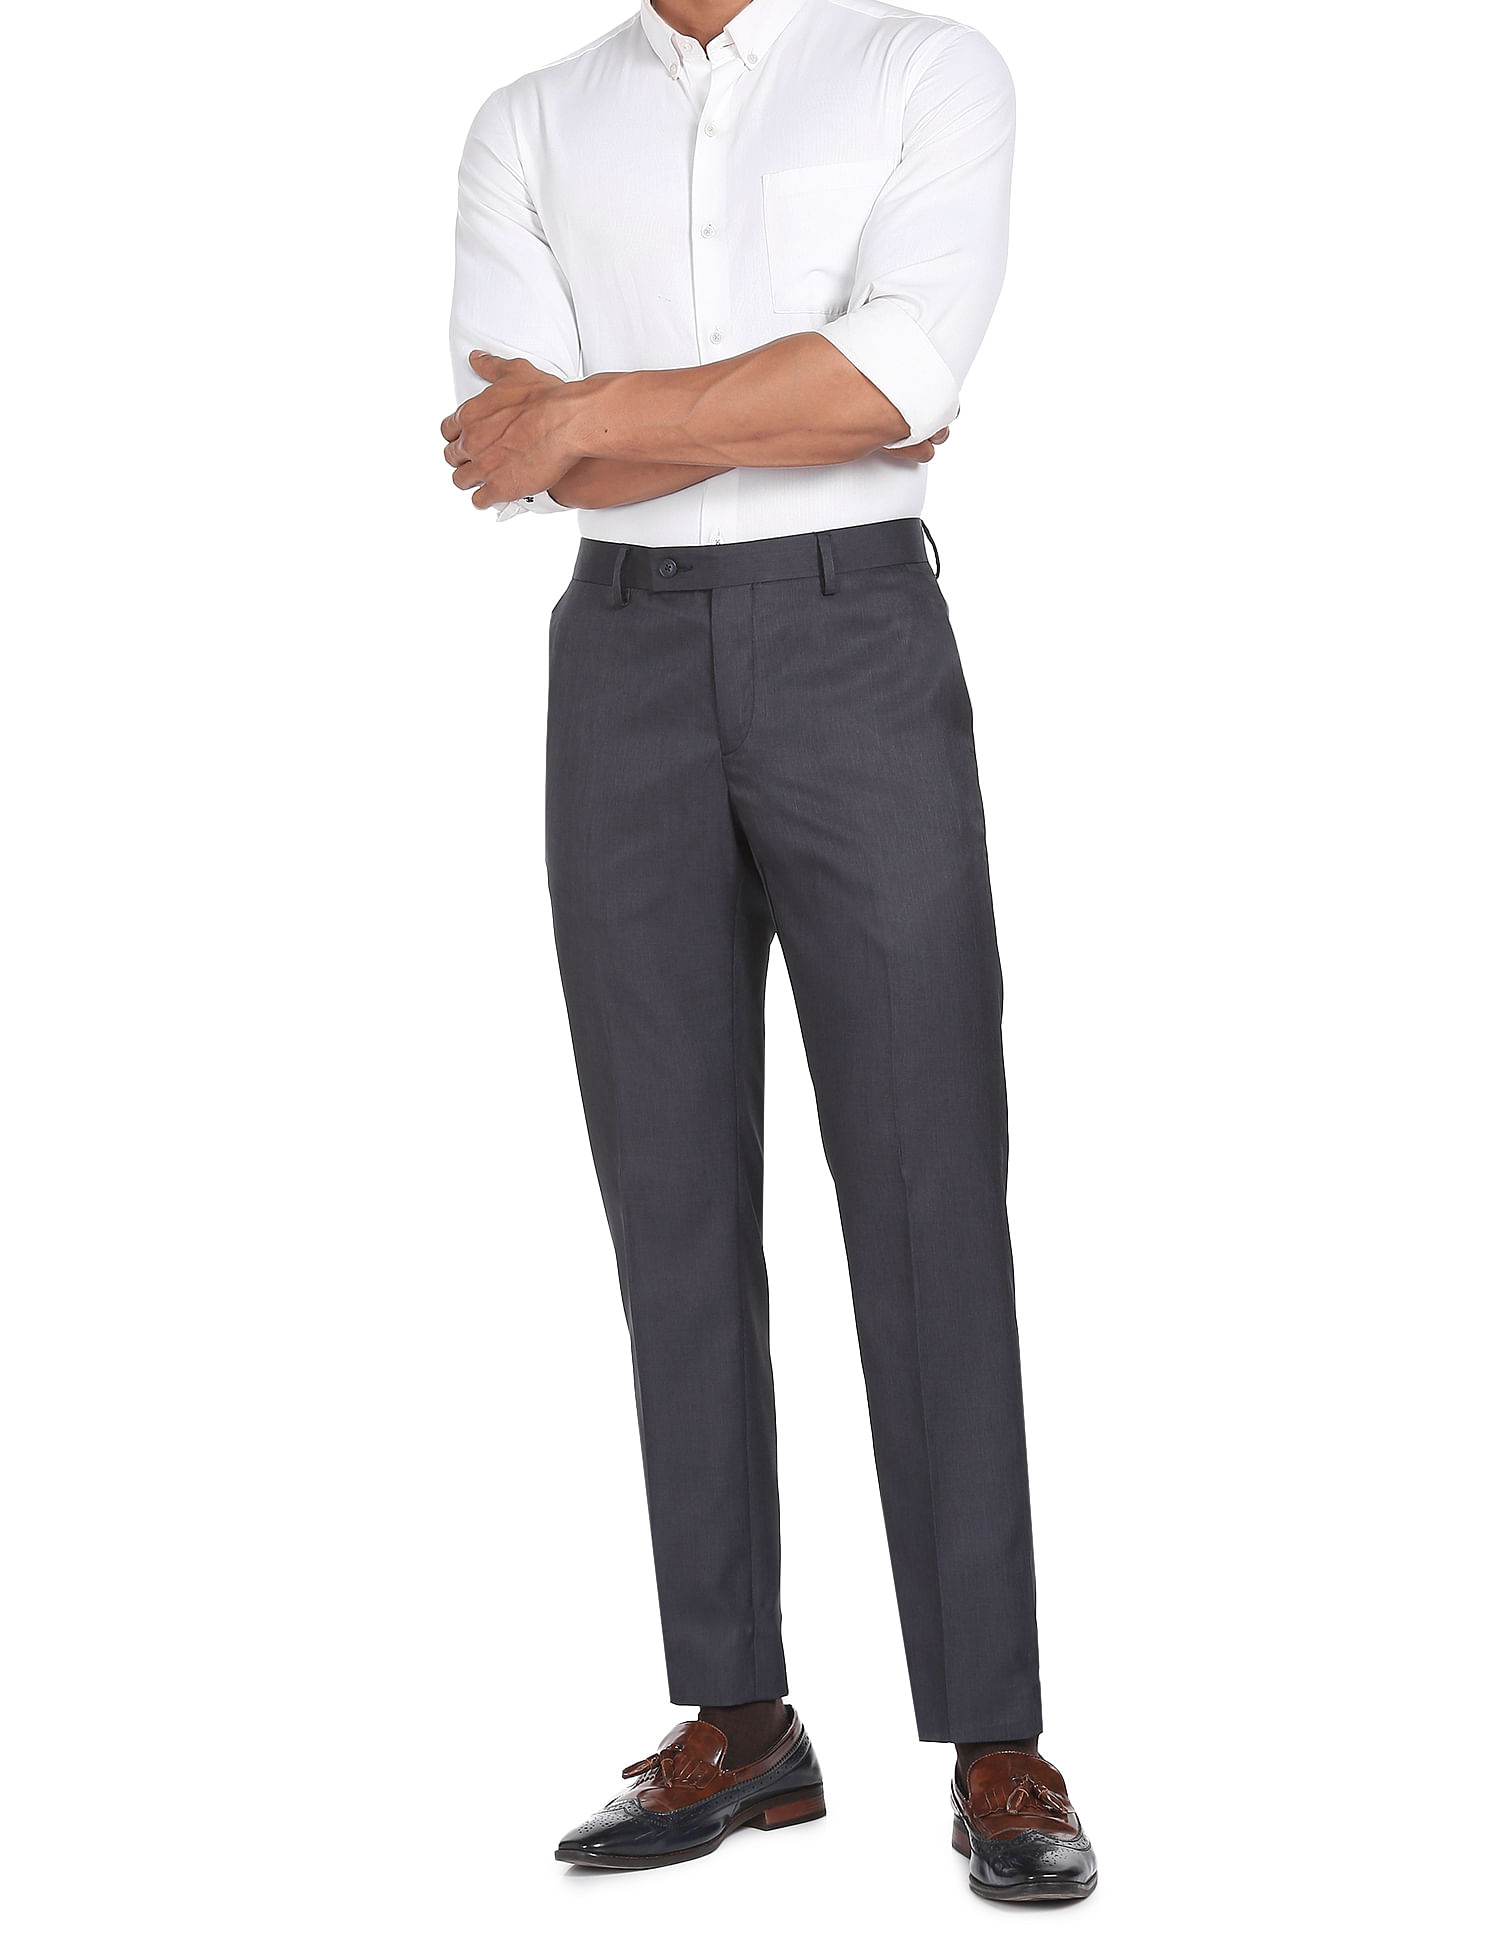 WEARBLISS Slim Fit Boys Maroon Trousers  Buy WEARBLISS Slim Fit Boys  Maroon Trousers Online at Best Prices in India  Flipkartcom